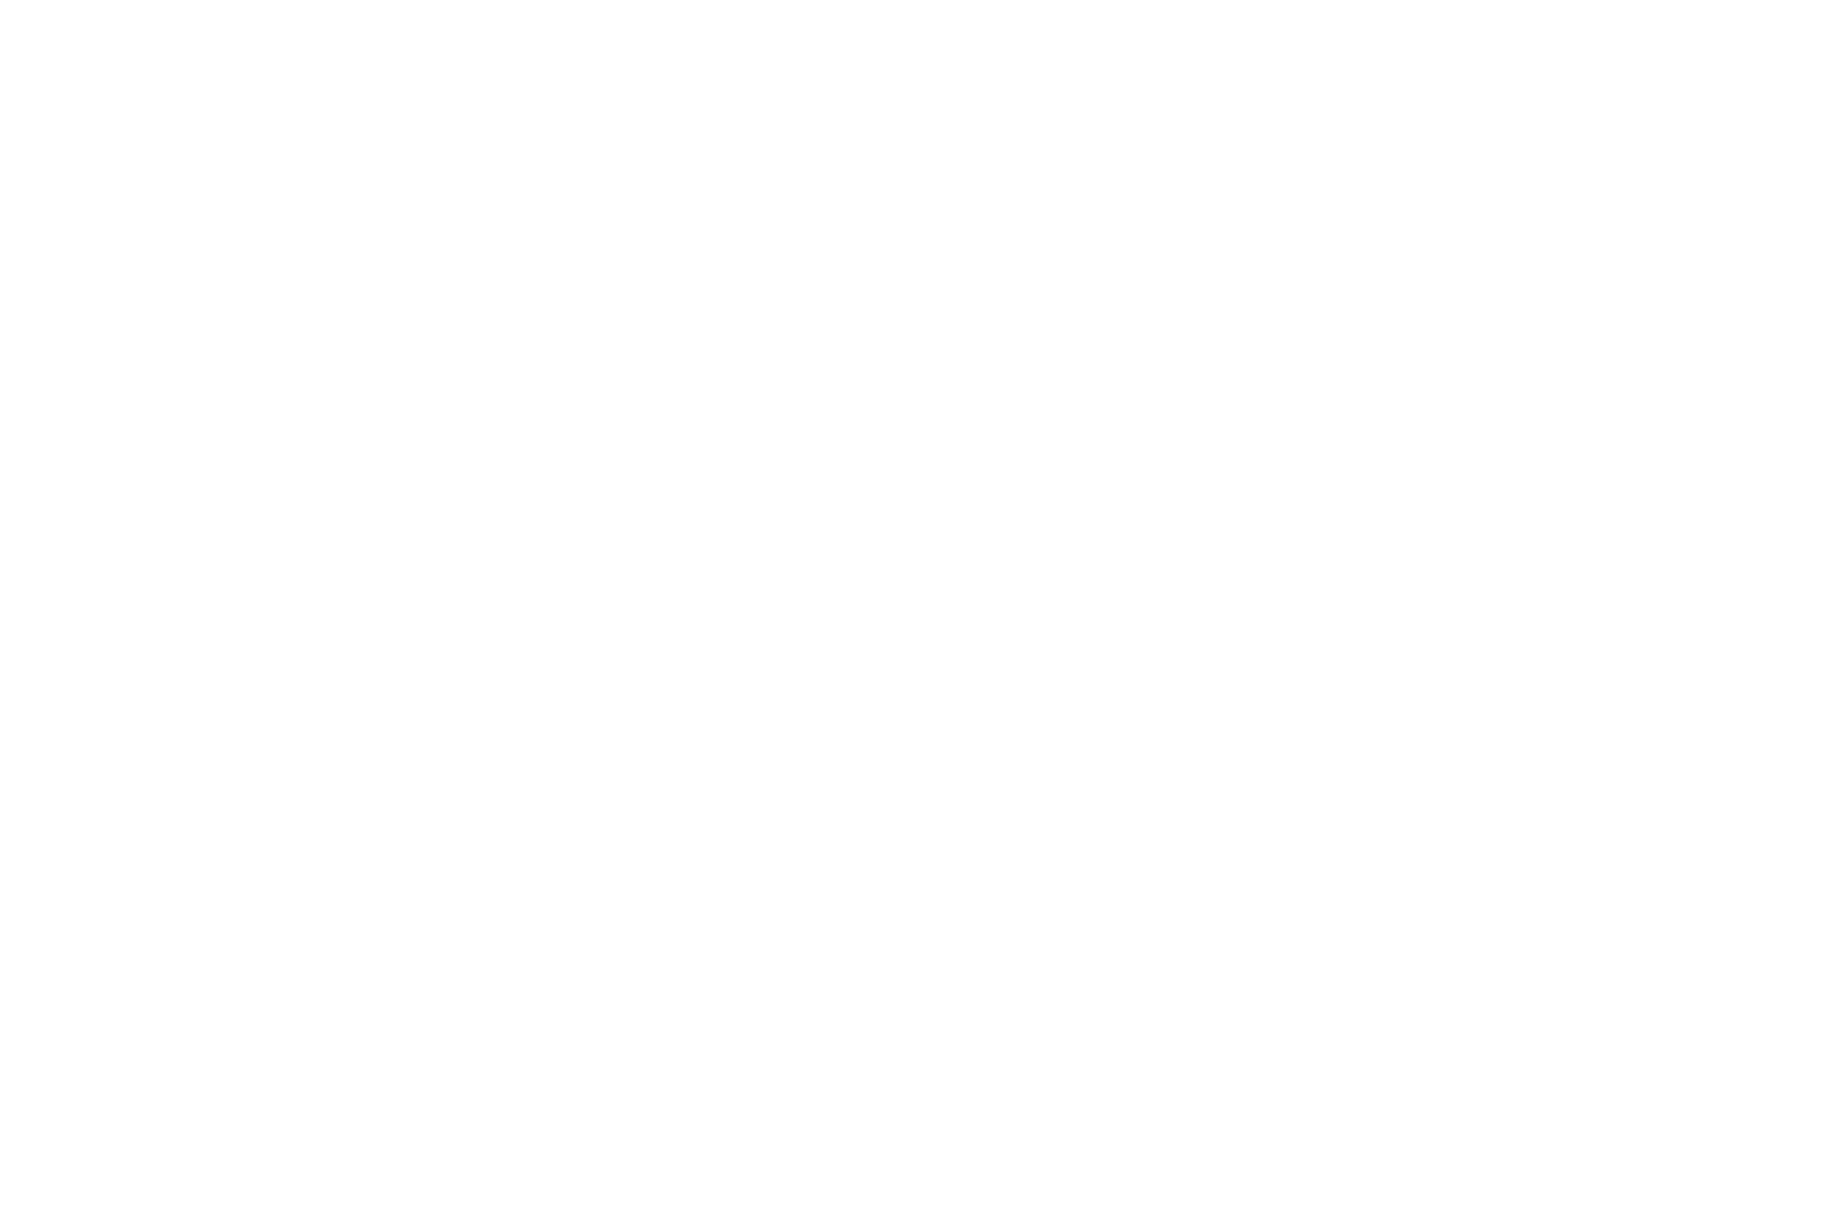 Permanent Park – 1990s Graffiti Inspired Marker Pen Font